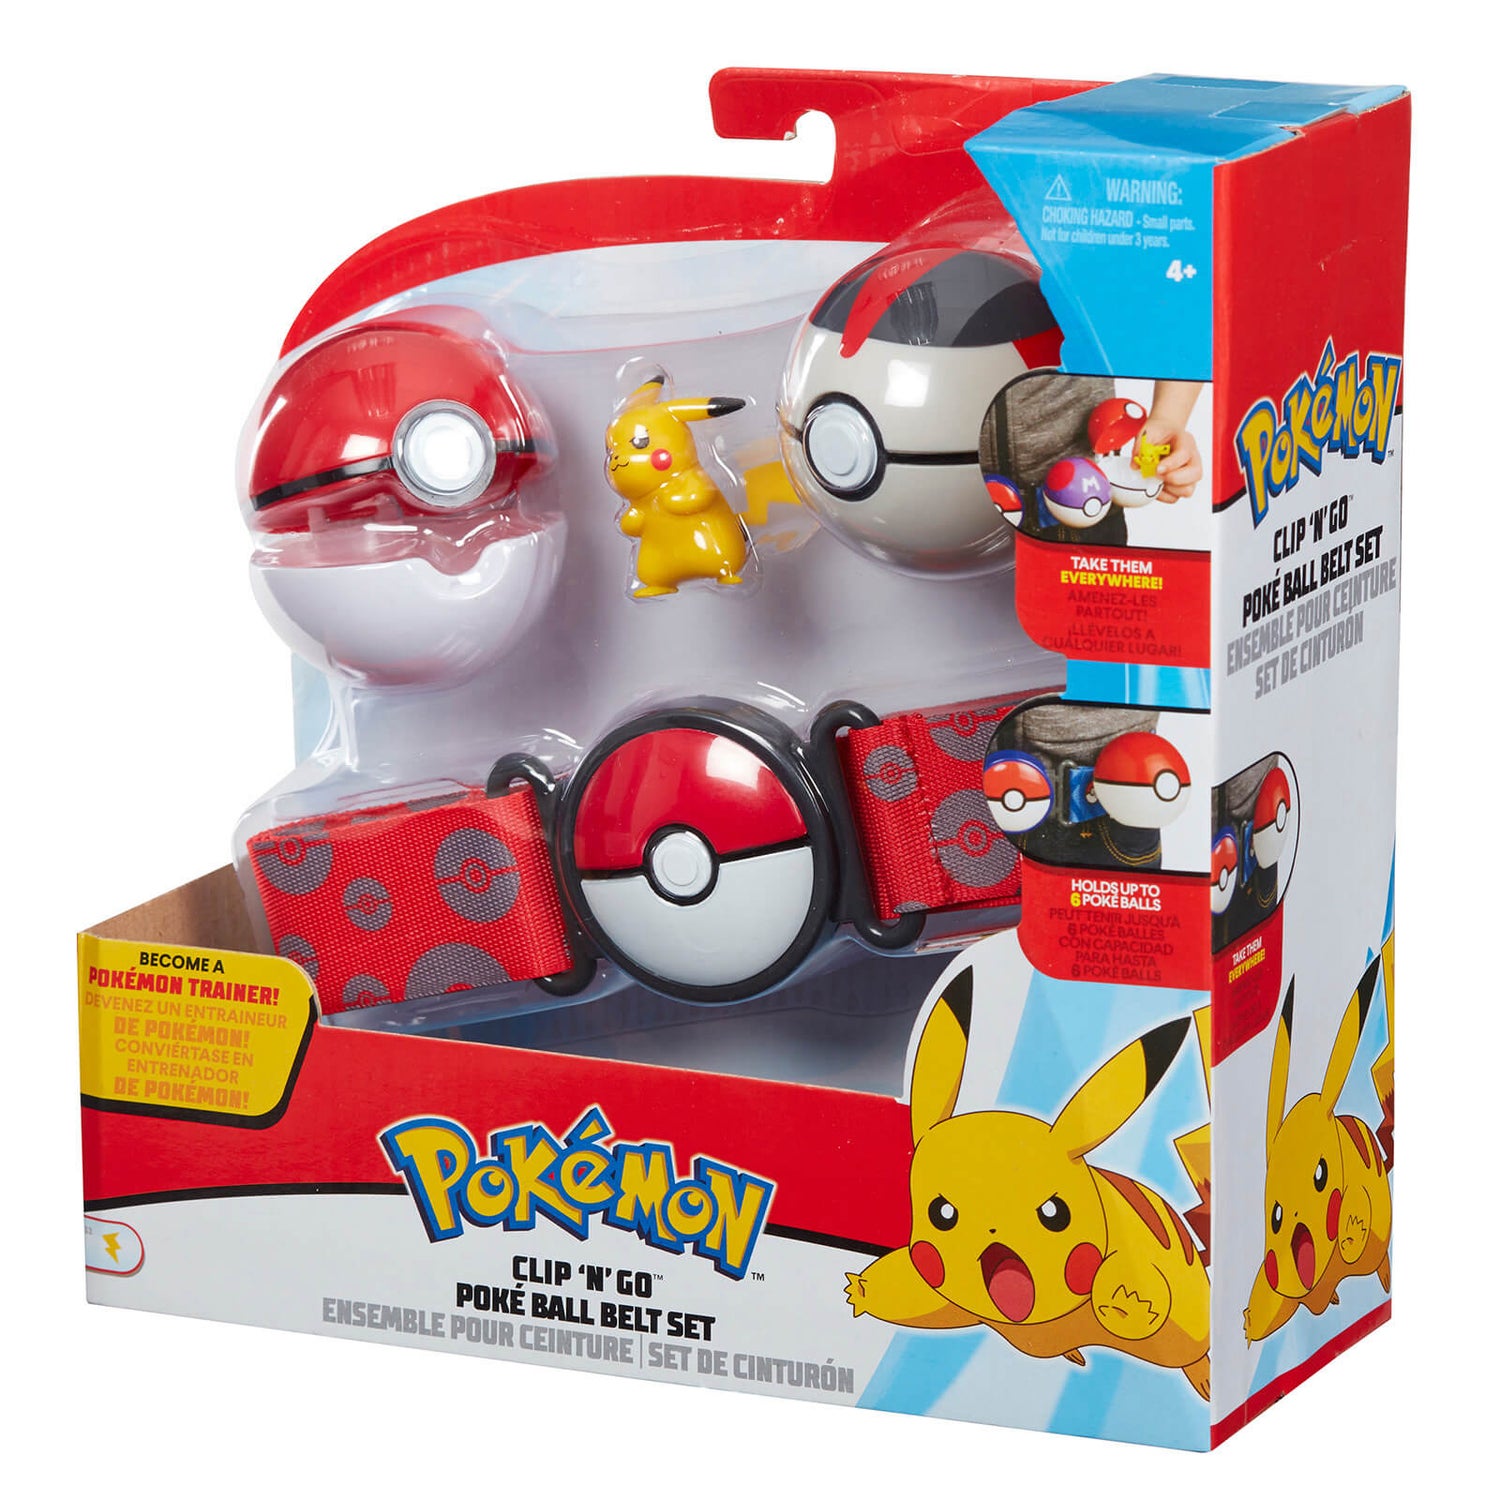 Pokémon Clip 'N' Go Pikachu Poke Ball mit Gürtel im Set